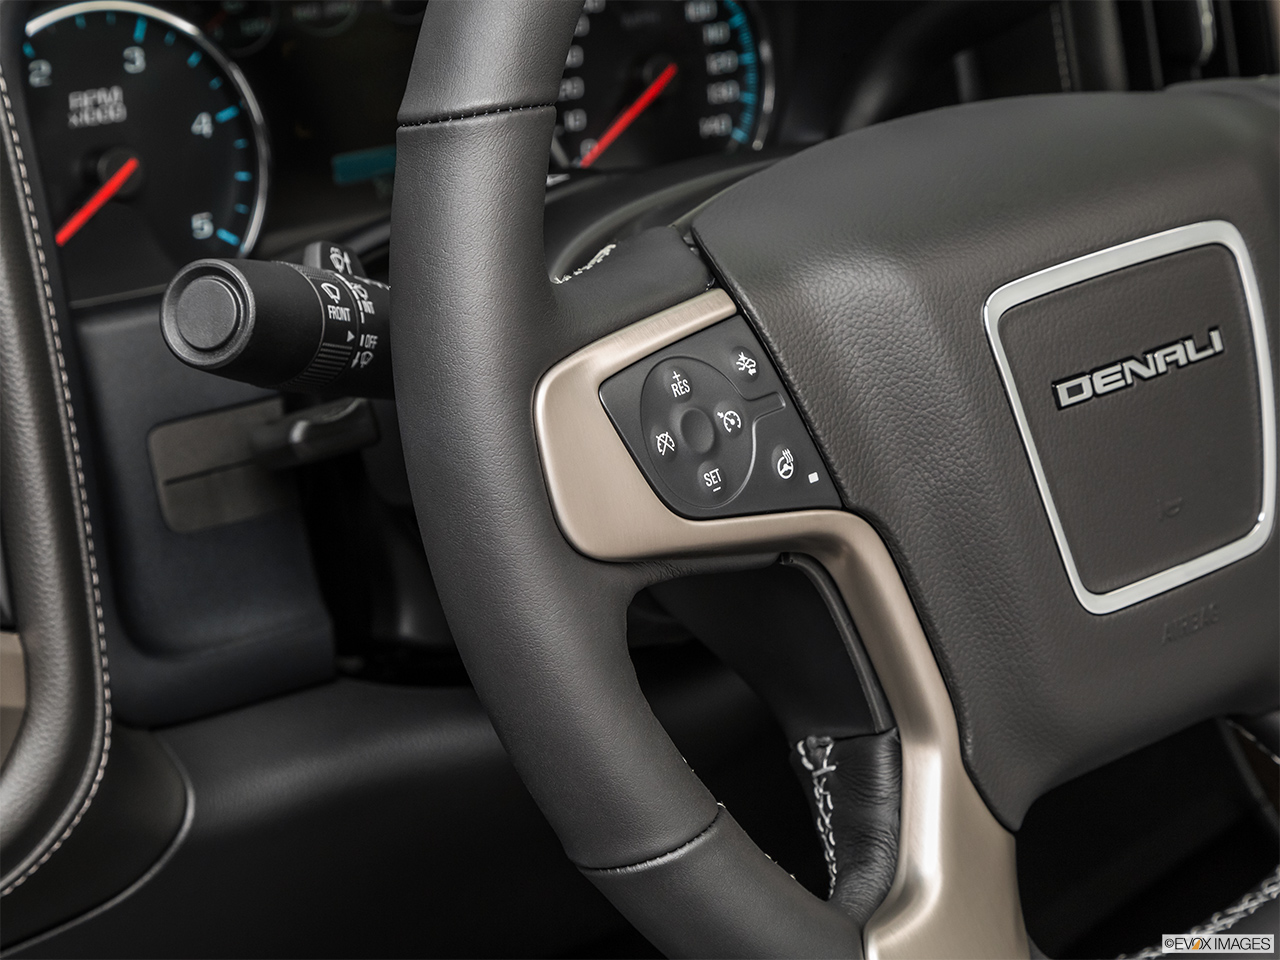 2019 GMC Sierra 2500HD Denali Steering Wheel Controls (Left Side) 